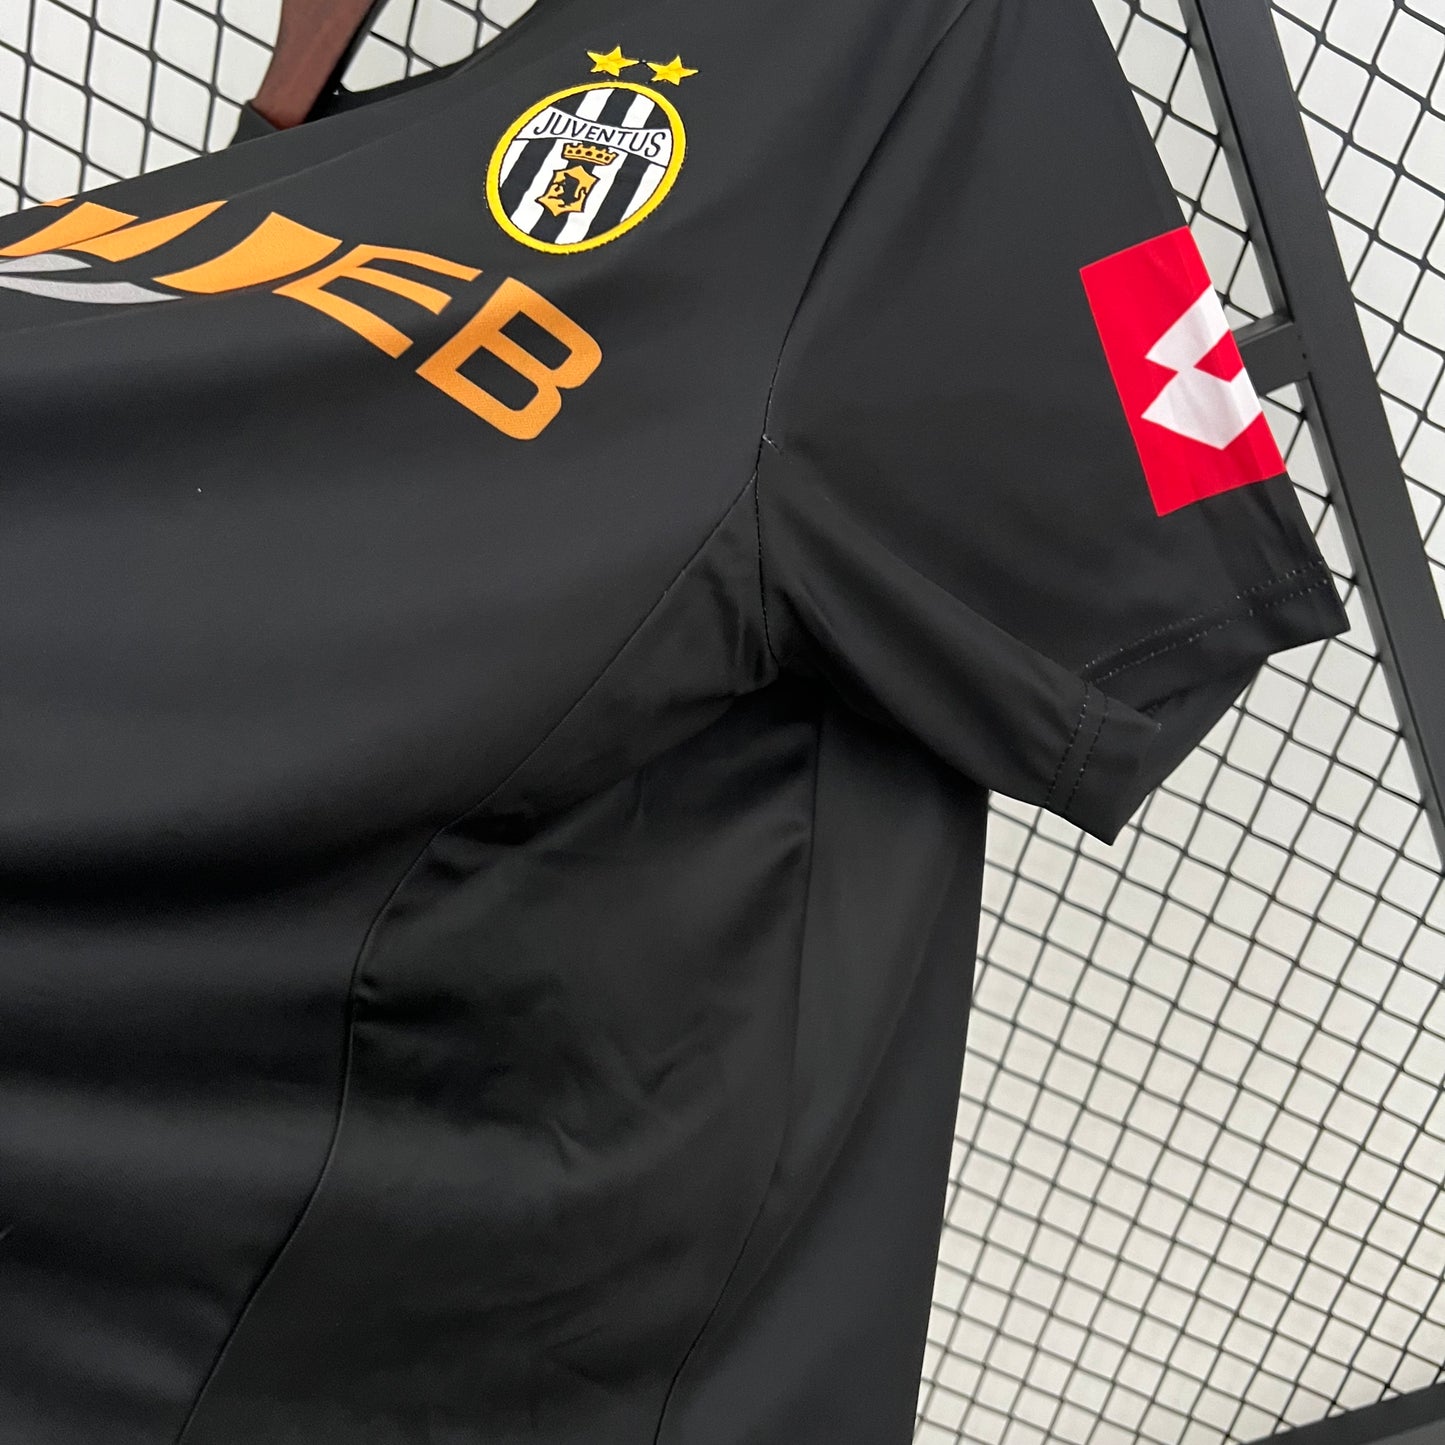 Retro Juventus 01/02 Away Kit